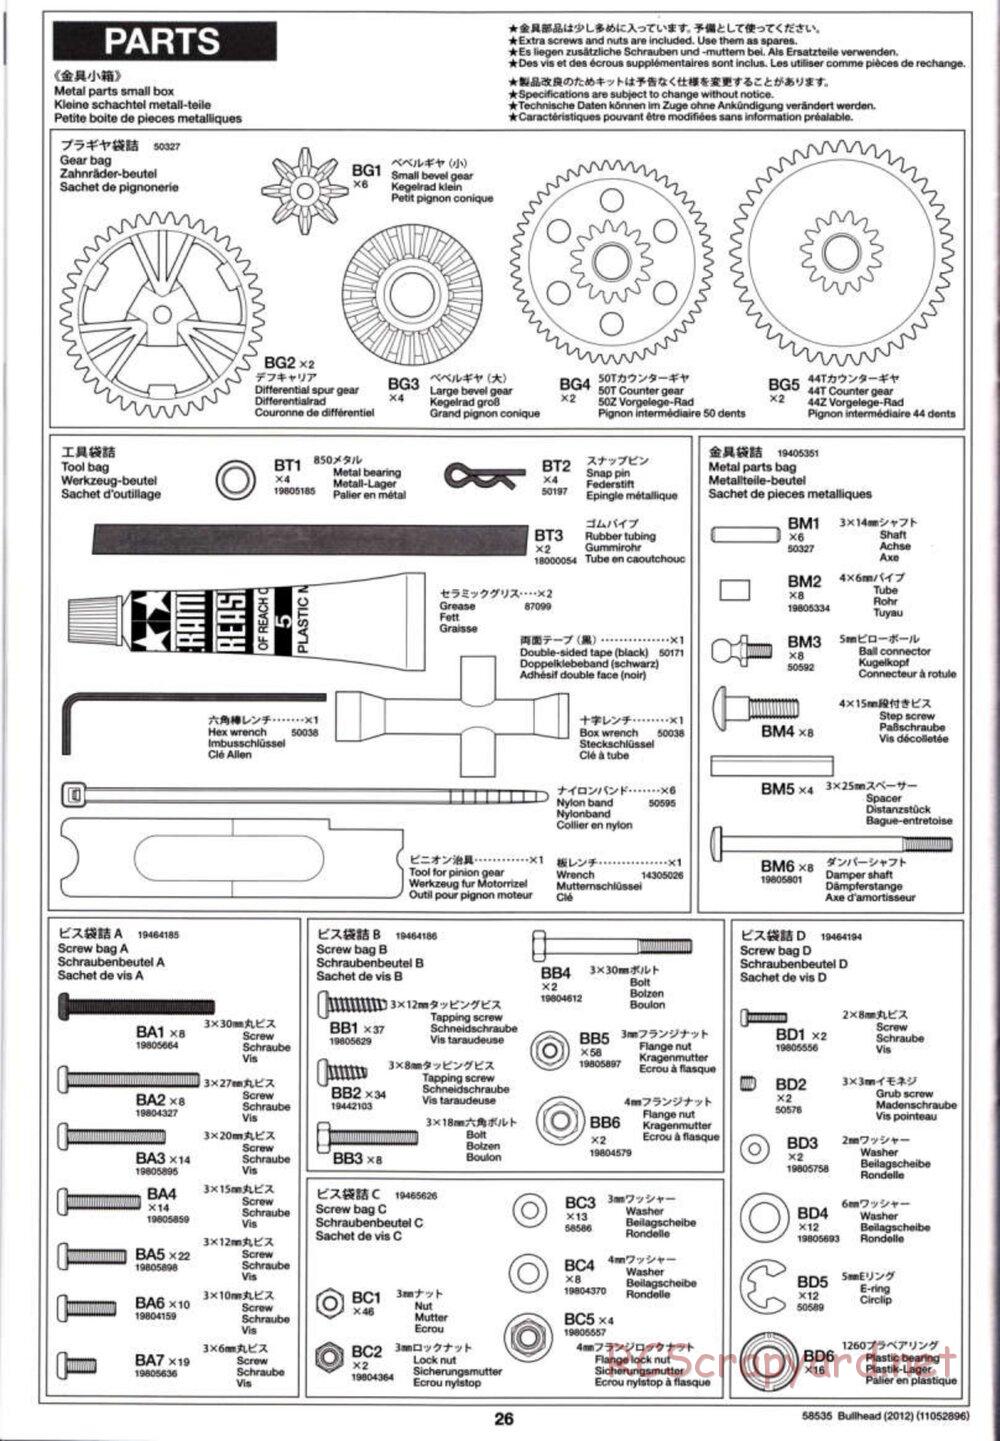 Tamiya - Bullhead 2012 - CB Chassis - Manual - Page 26